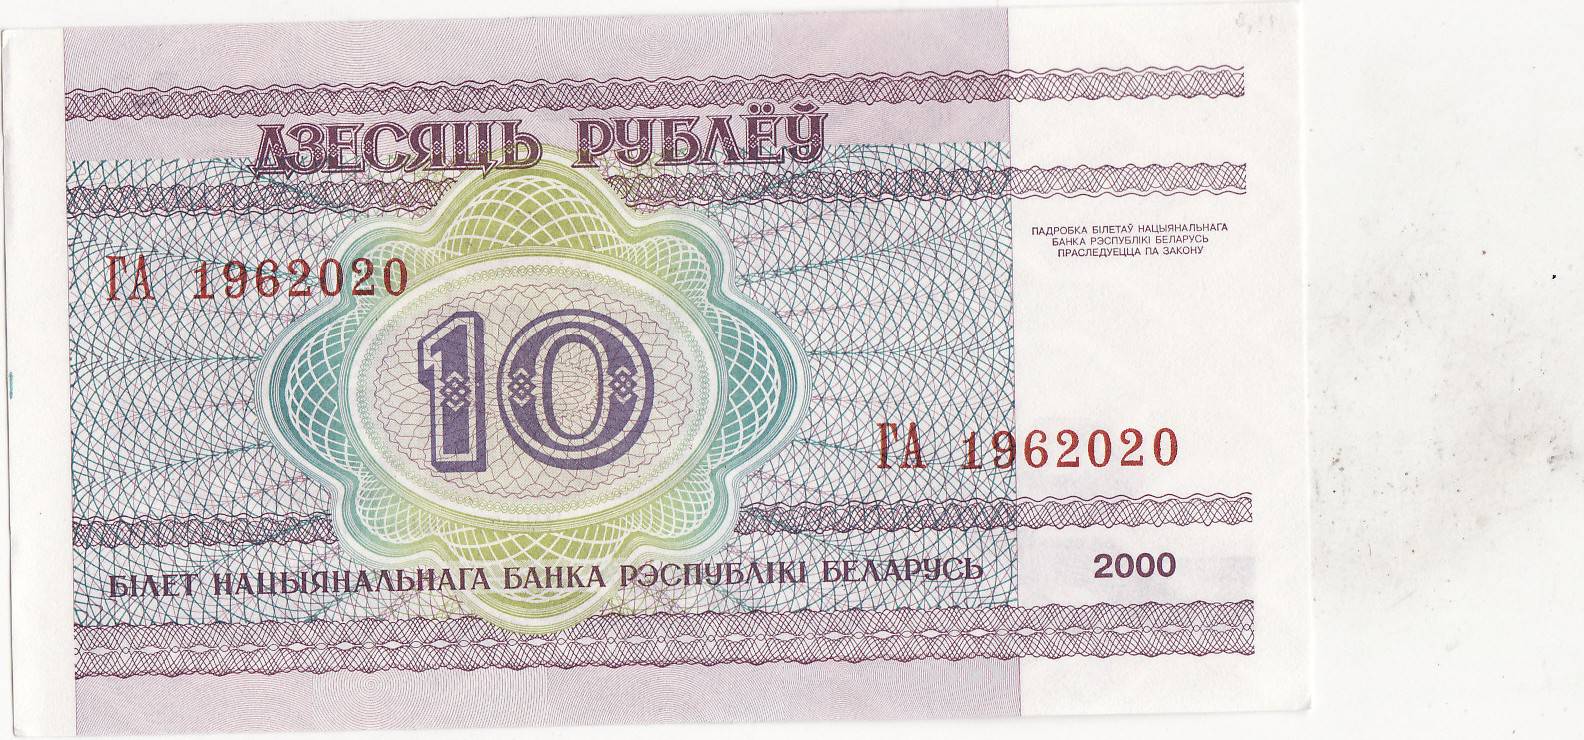 80 белорусских рублей в рублях. Бона Беларусь Белоруссия 10 рублей 2000. 10 Рублей 2000 Беларусь.